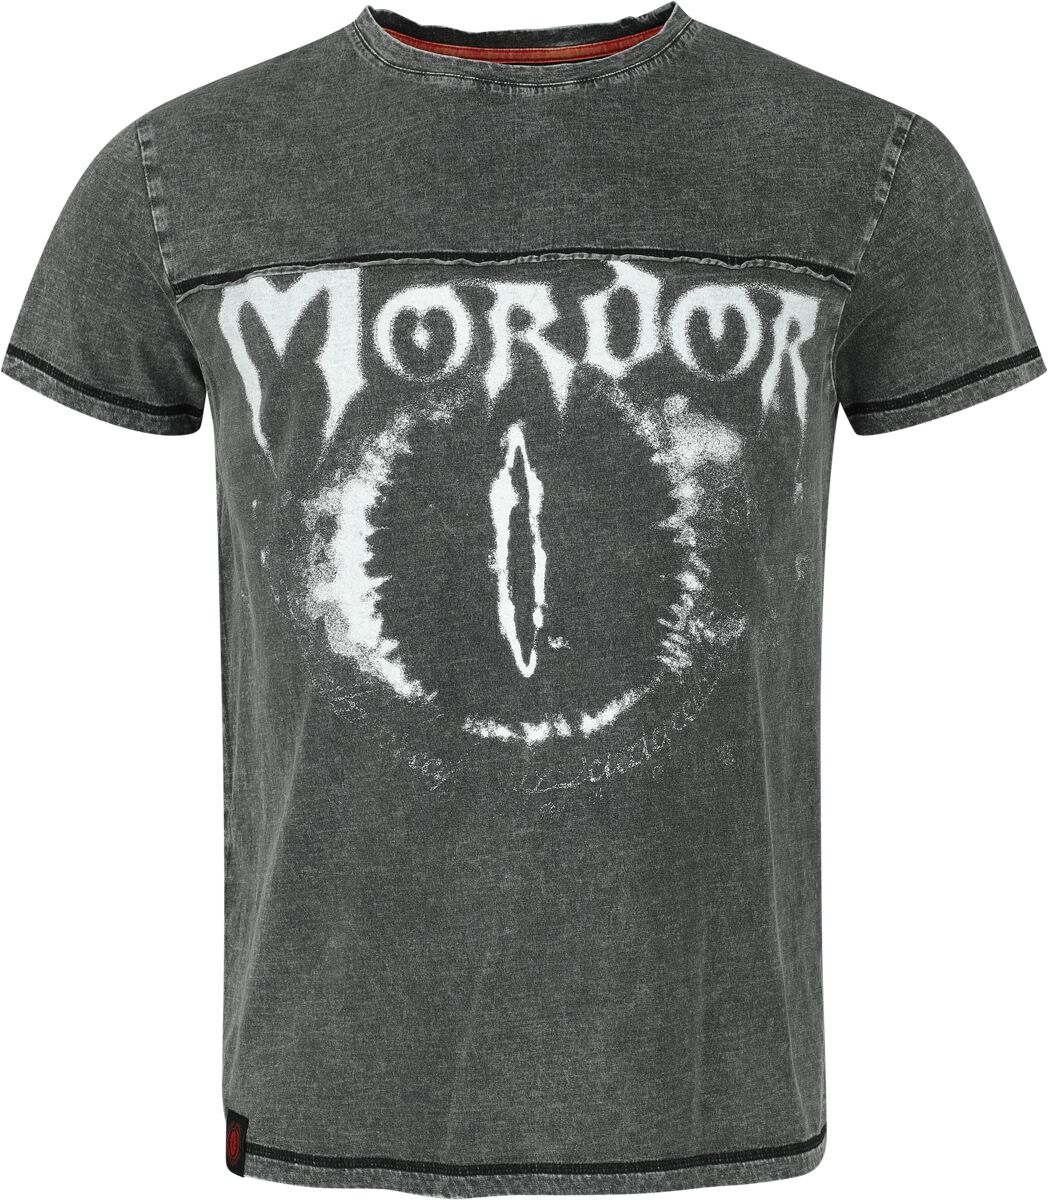 Der Herr der Ringe T-Shirt - Mordor - S bis XXL - für Männer - Größe XXL - charcoal  - EMP exklusives Merchandise!